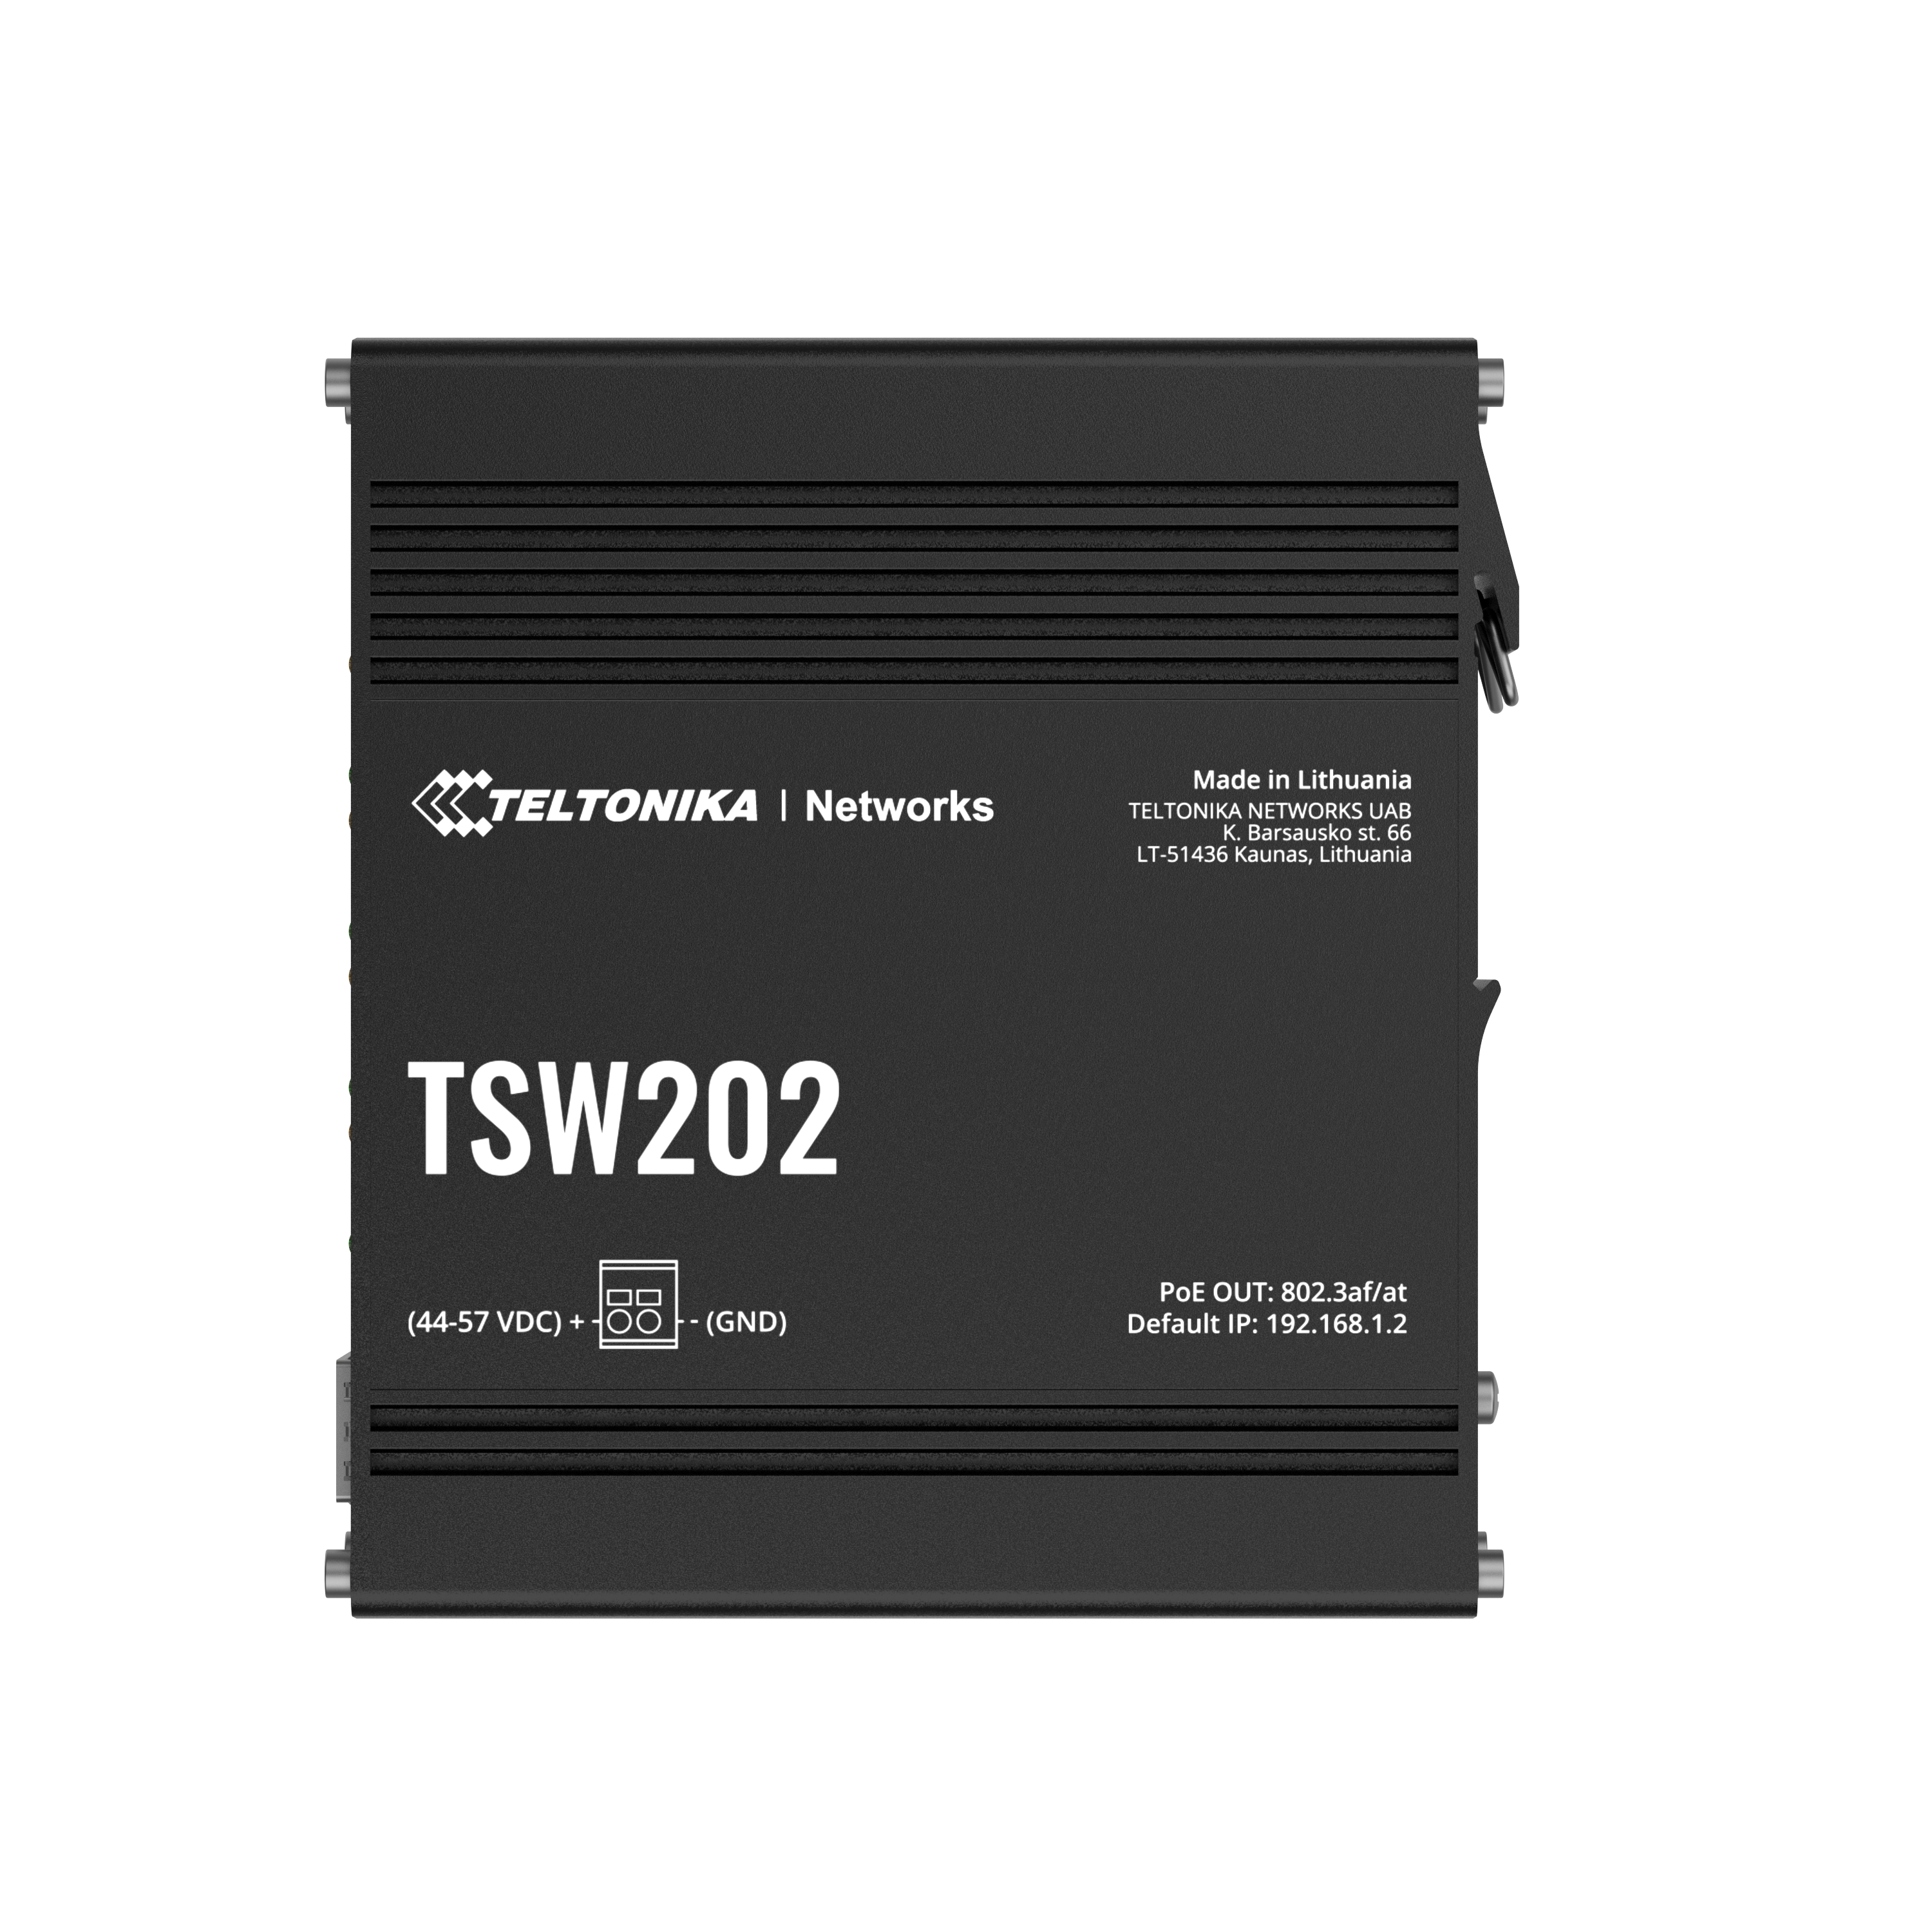 Teltonika TSW202 Managed PoE+ Switch